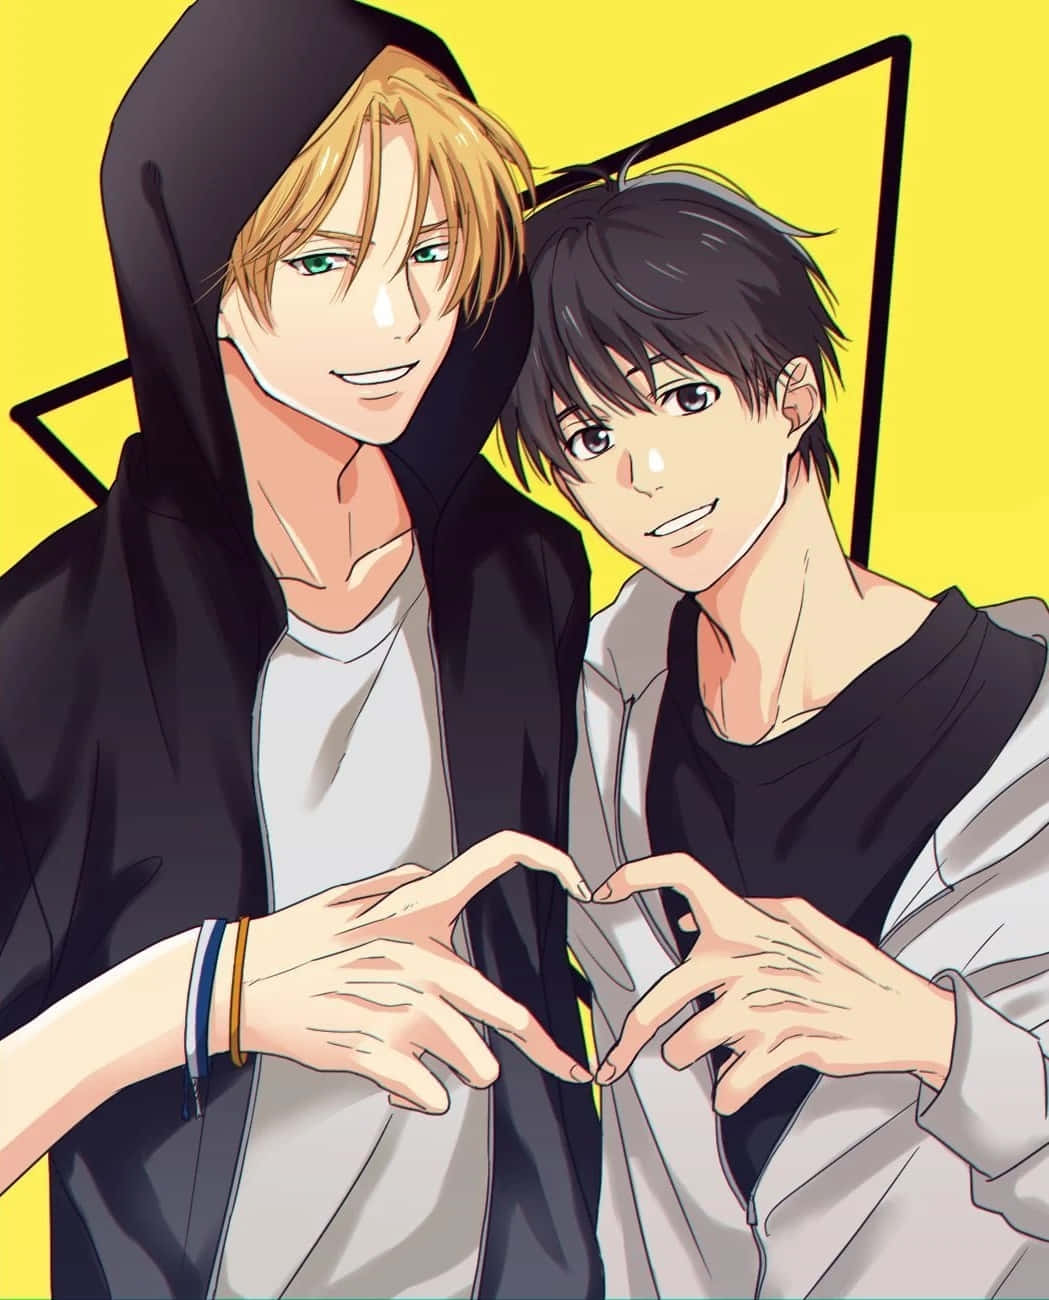 Et glad LGBT+ Anime-par der omfavner hinanden med kærlighed. Wallpaper